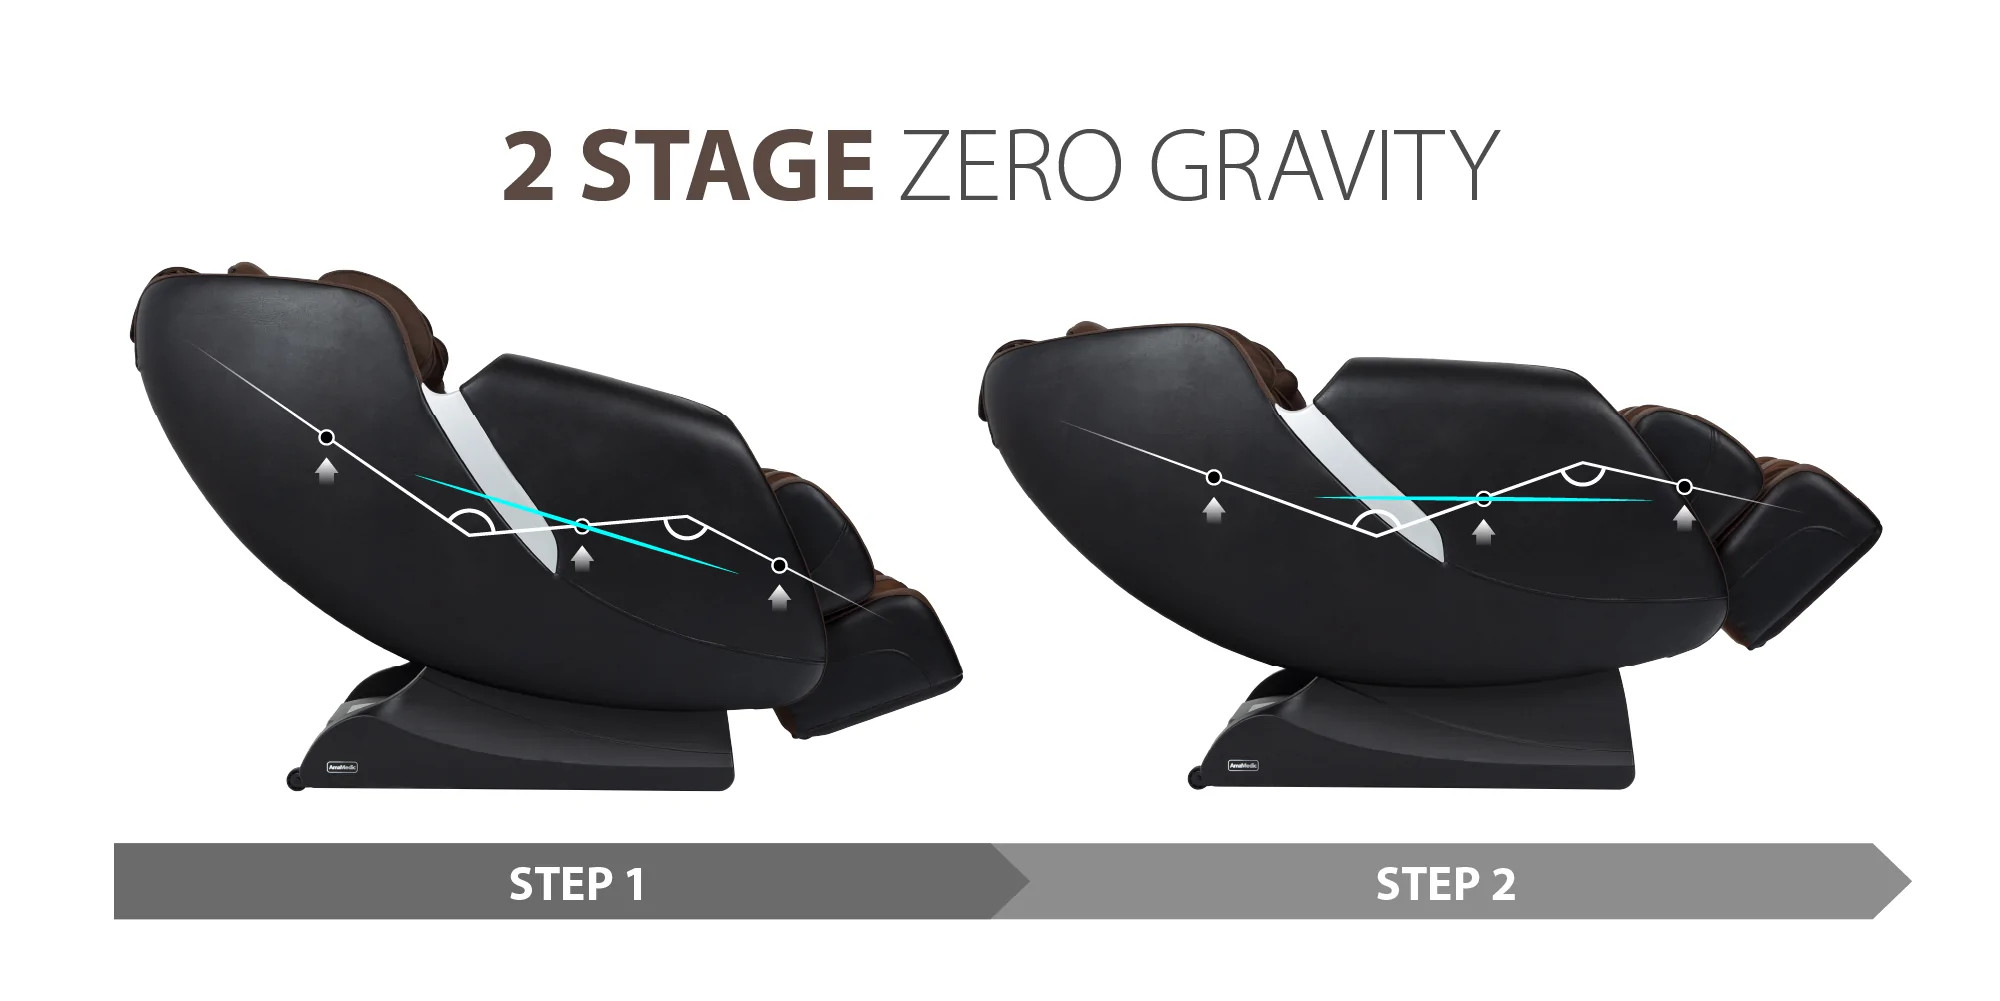 AmaMedic R7 Massage Chair, 2 Stage Zero Gravity